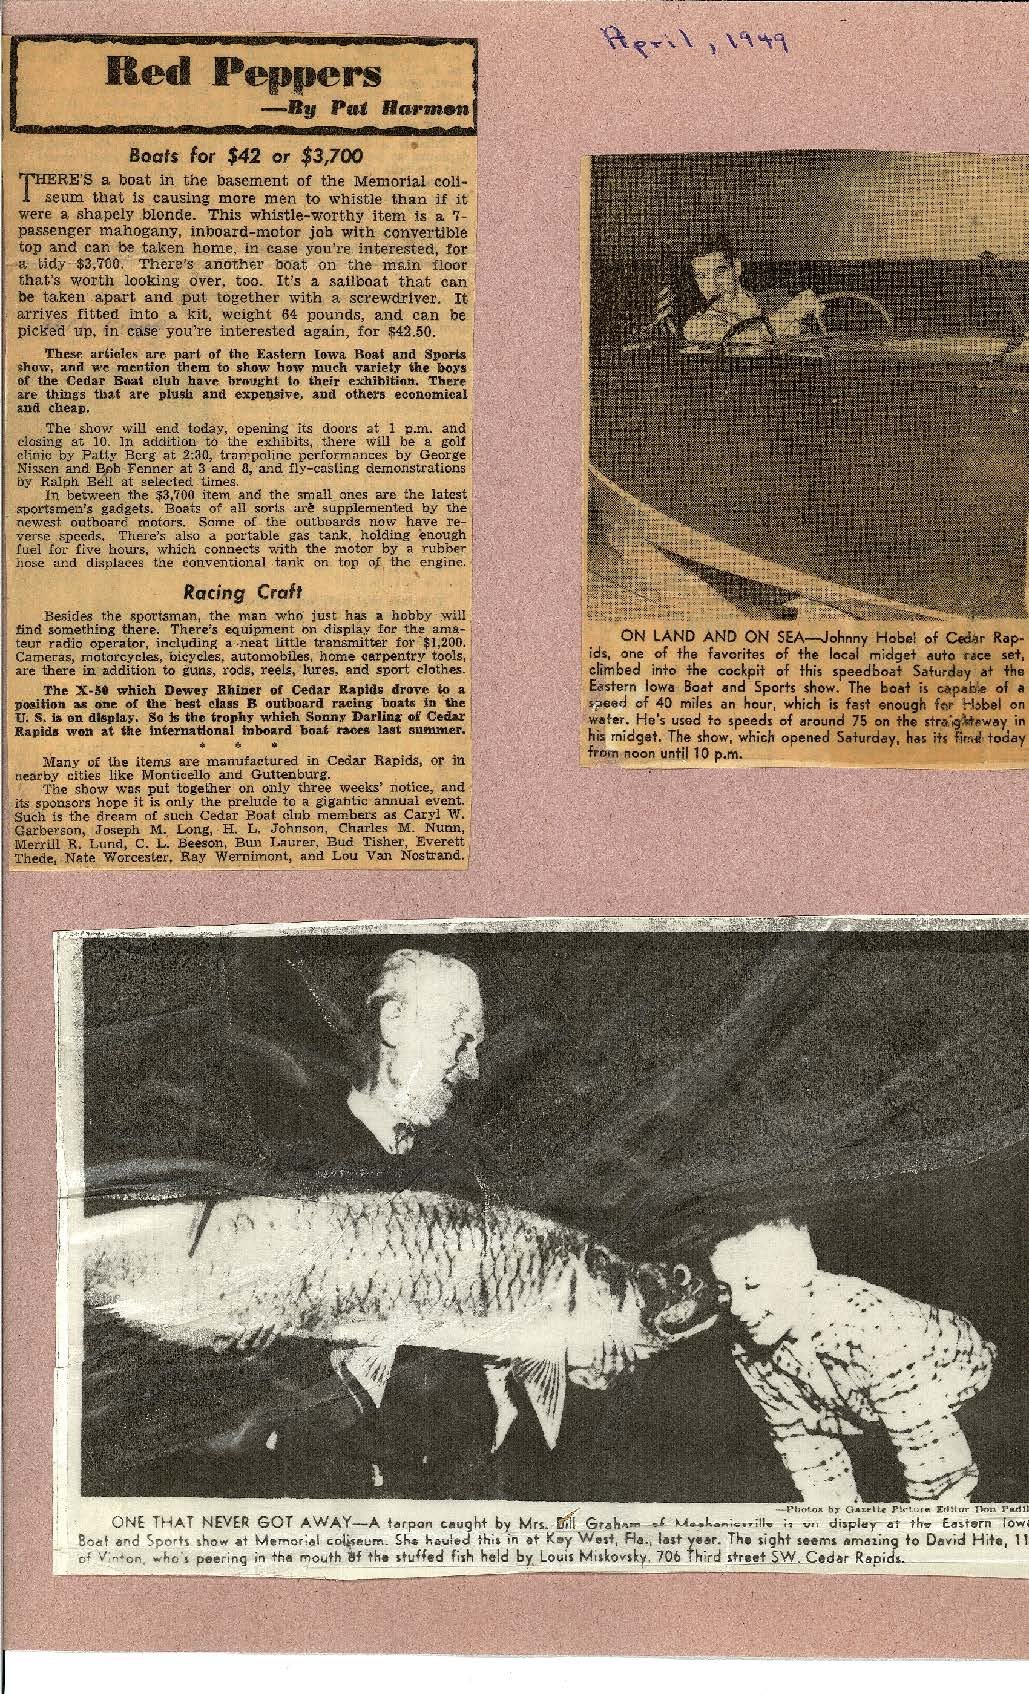 Gazette articles and pictures April 1949 regarding boat show